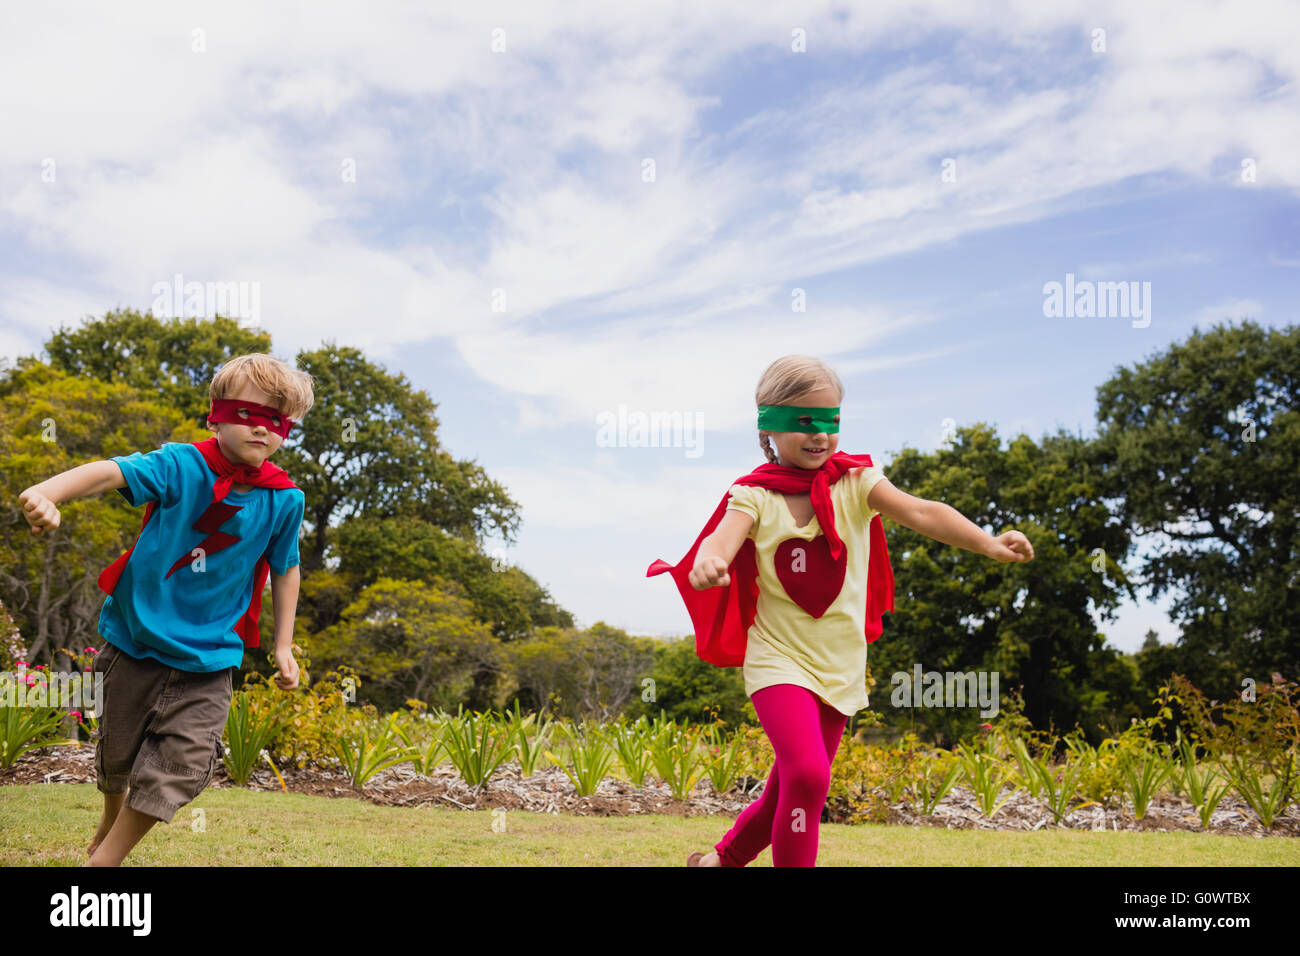 Children pretending to be superhero Stock Photo